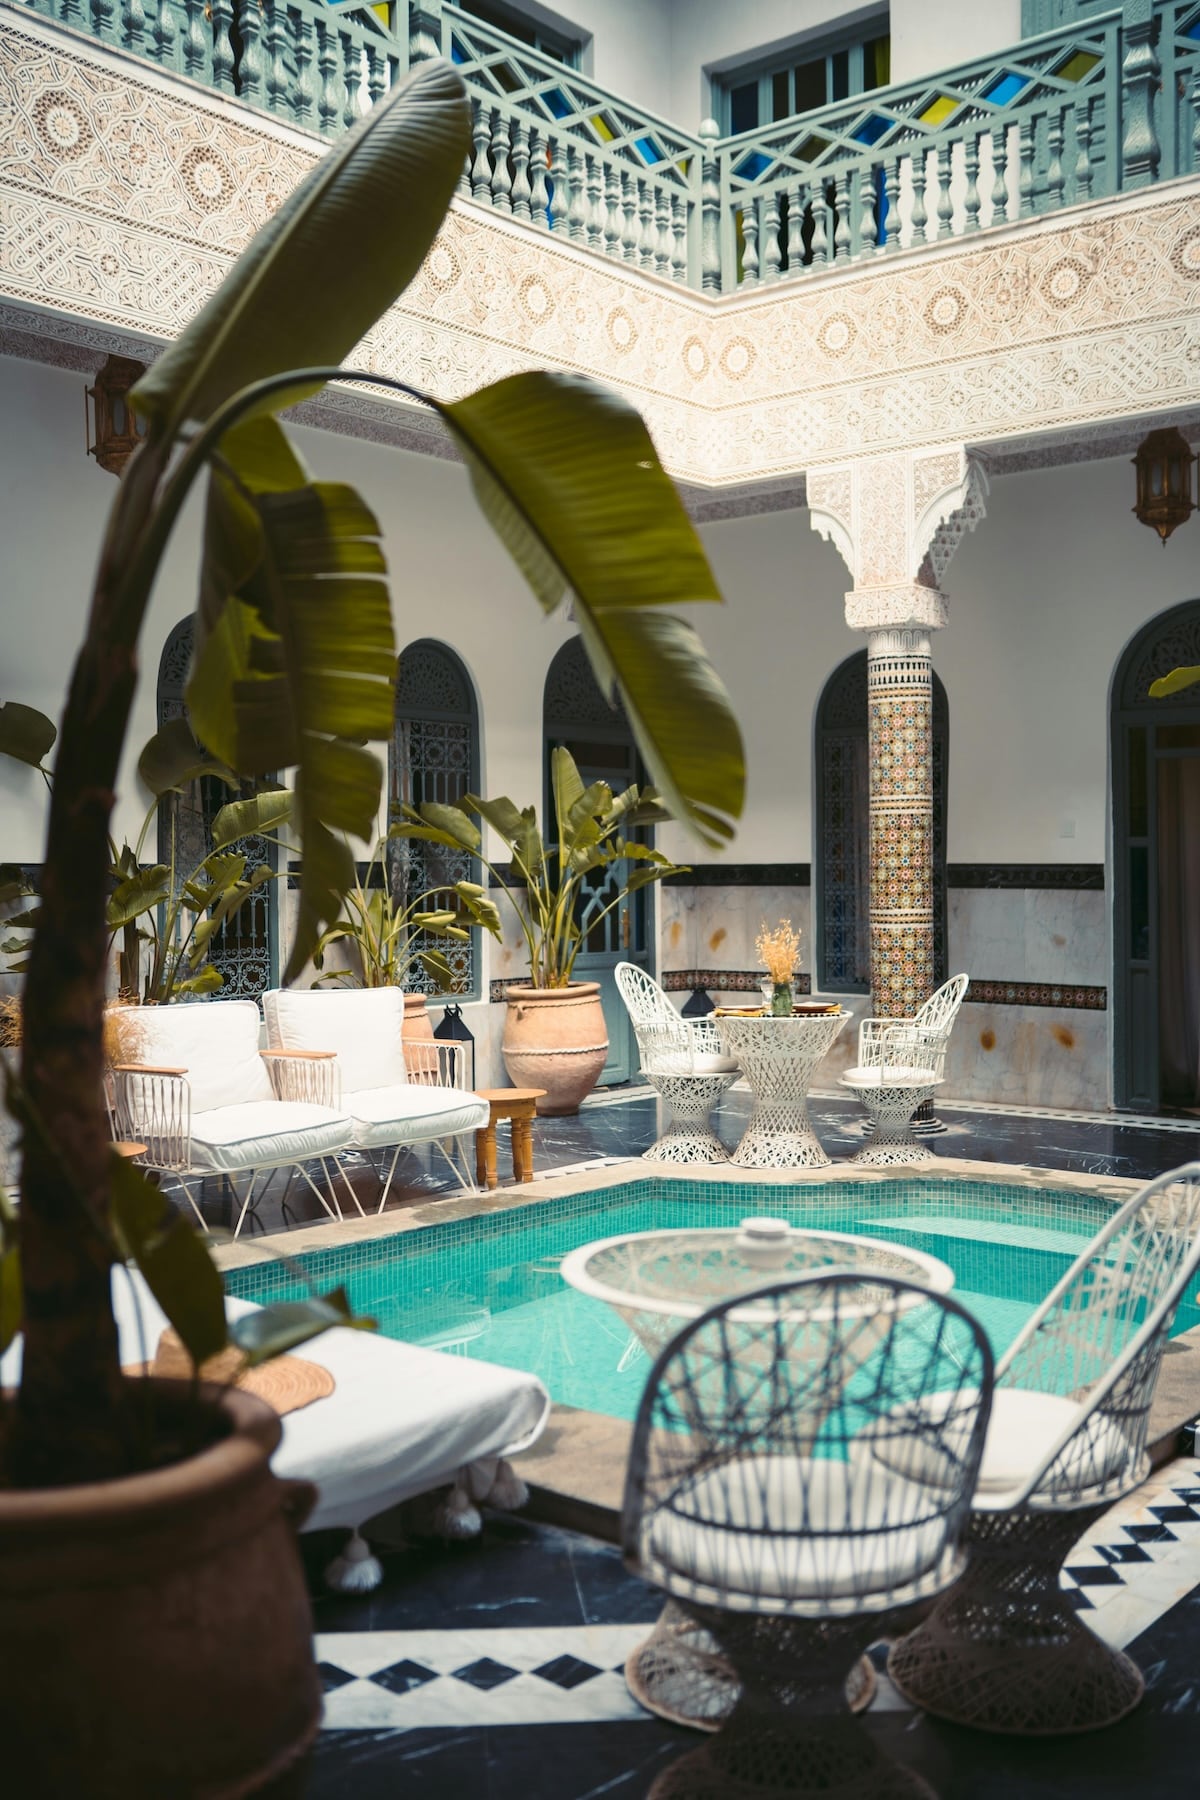 Marokkanisches Hammam Entspannedes Wellness Spa mit Pool und Palmen